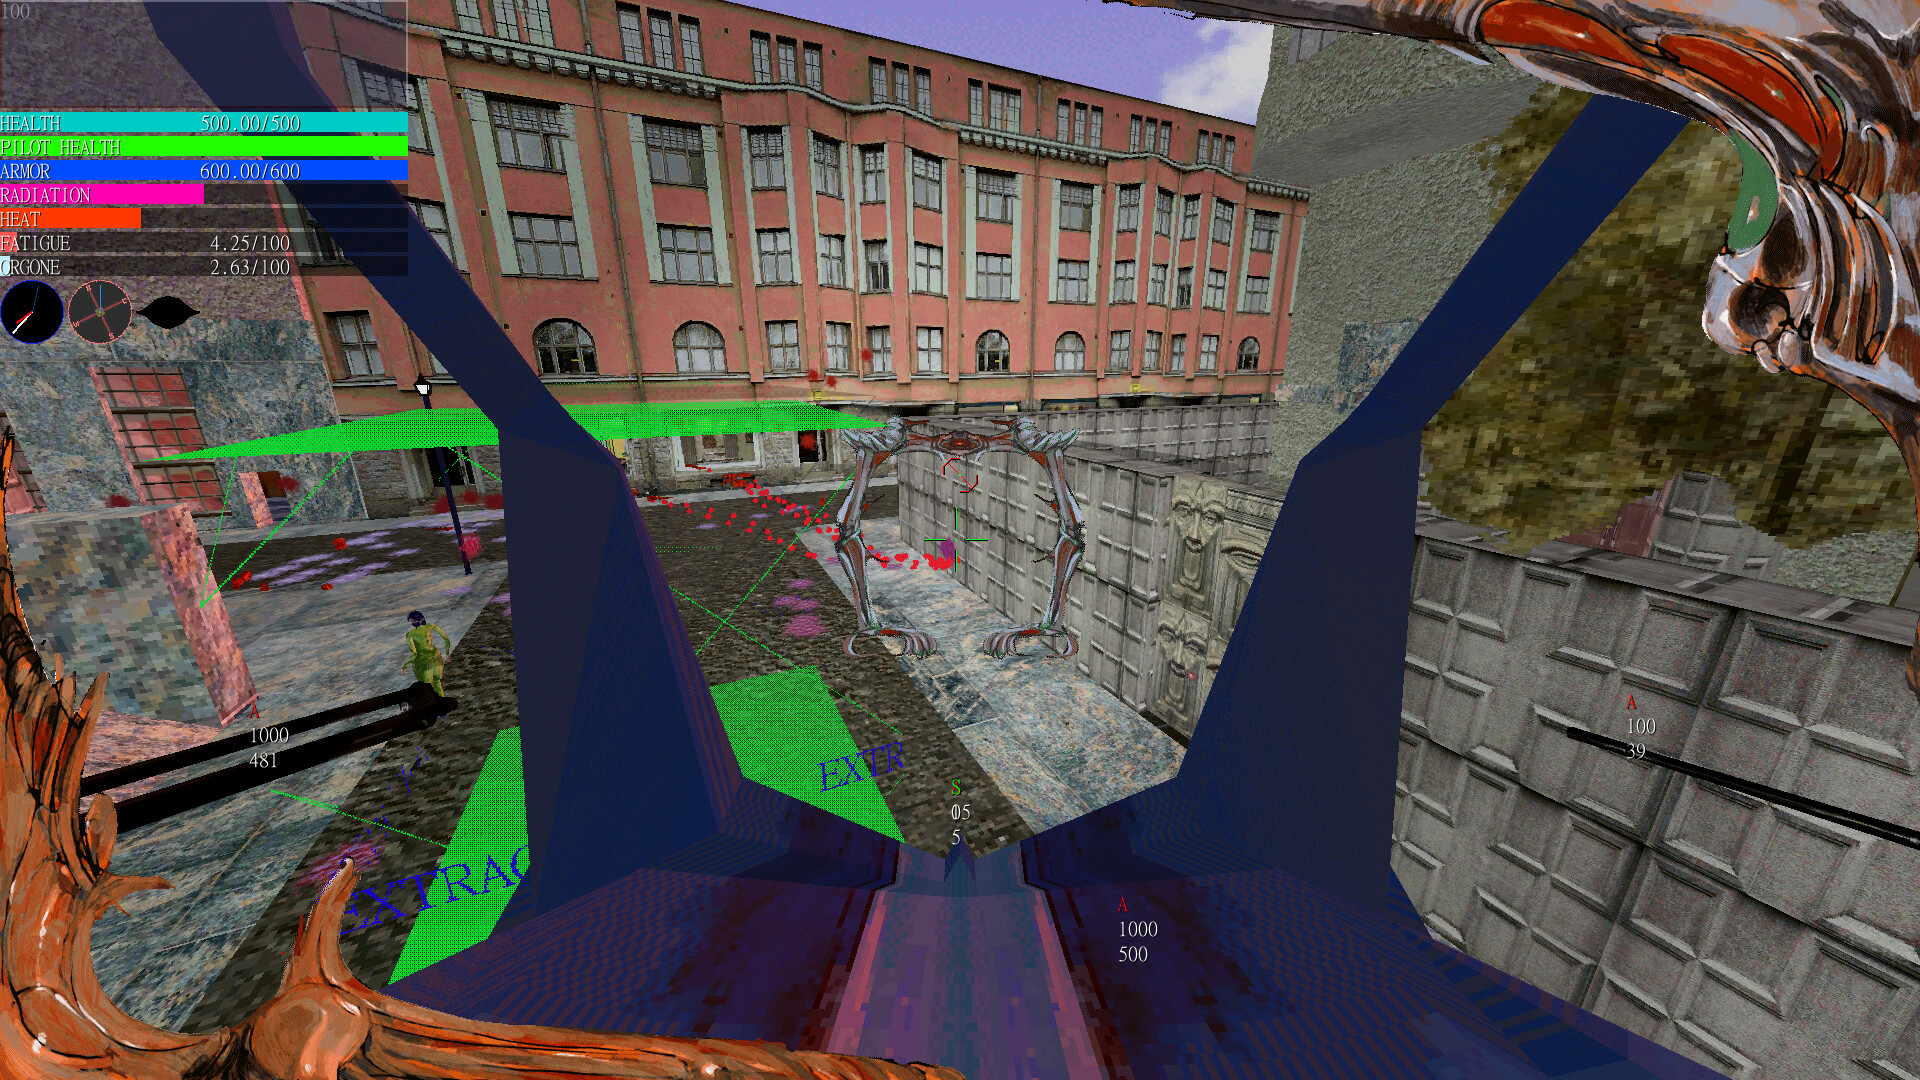 Een screenshot van Psycho Patrol R die in ontwikkeling is. Het is een grafische stijl met lage resolutie en lage resolutie met opzettelijk botsende kleuren en interface-elementen.